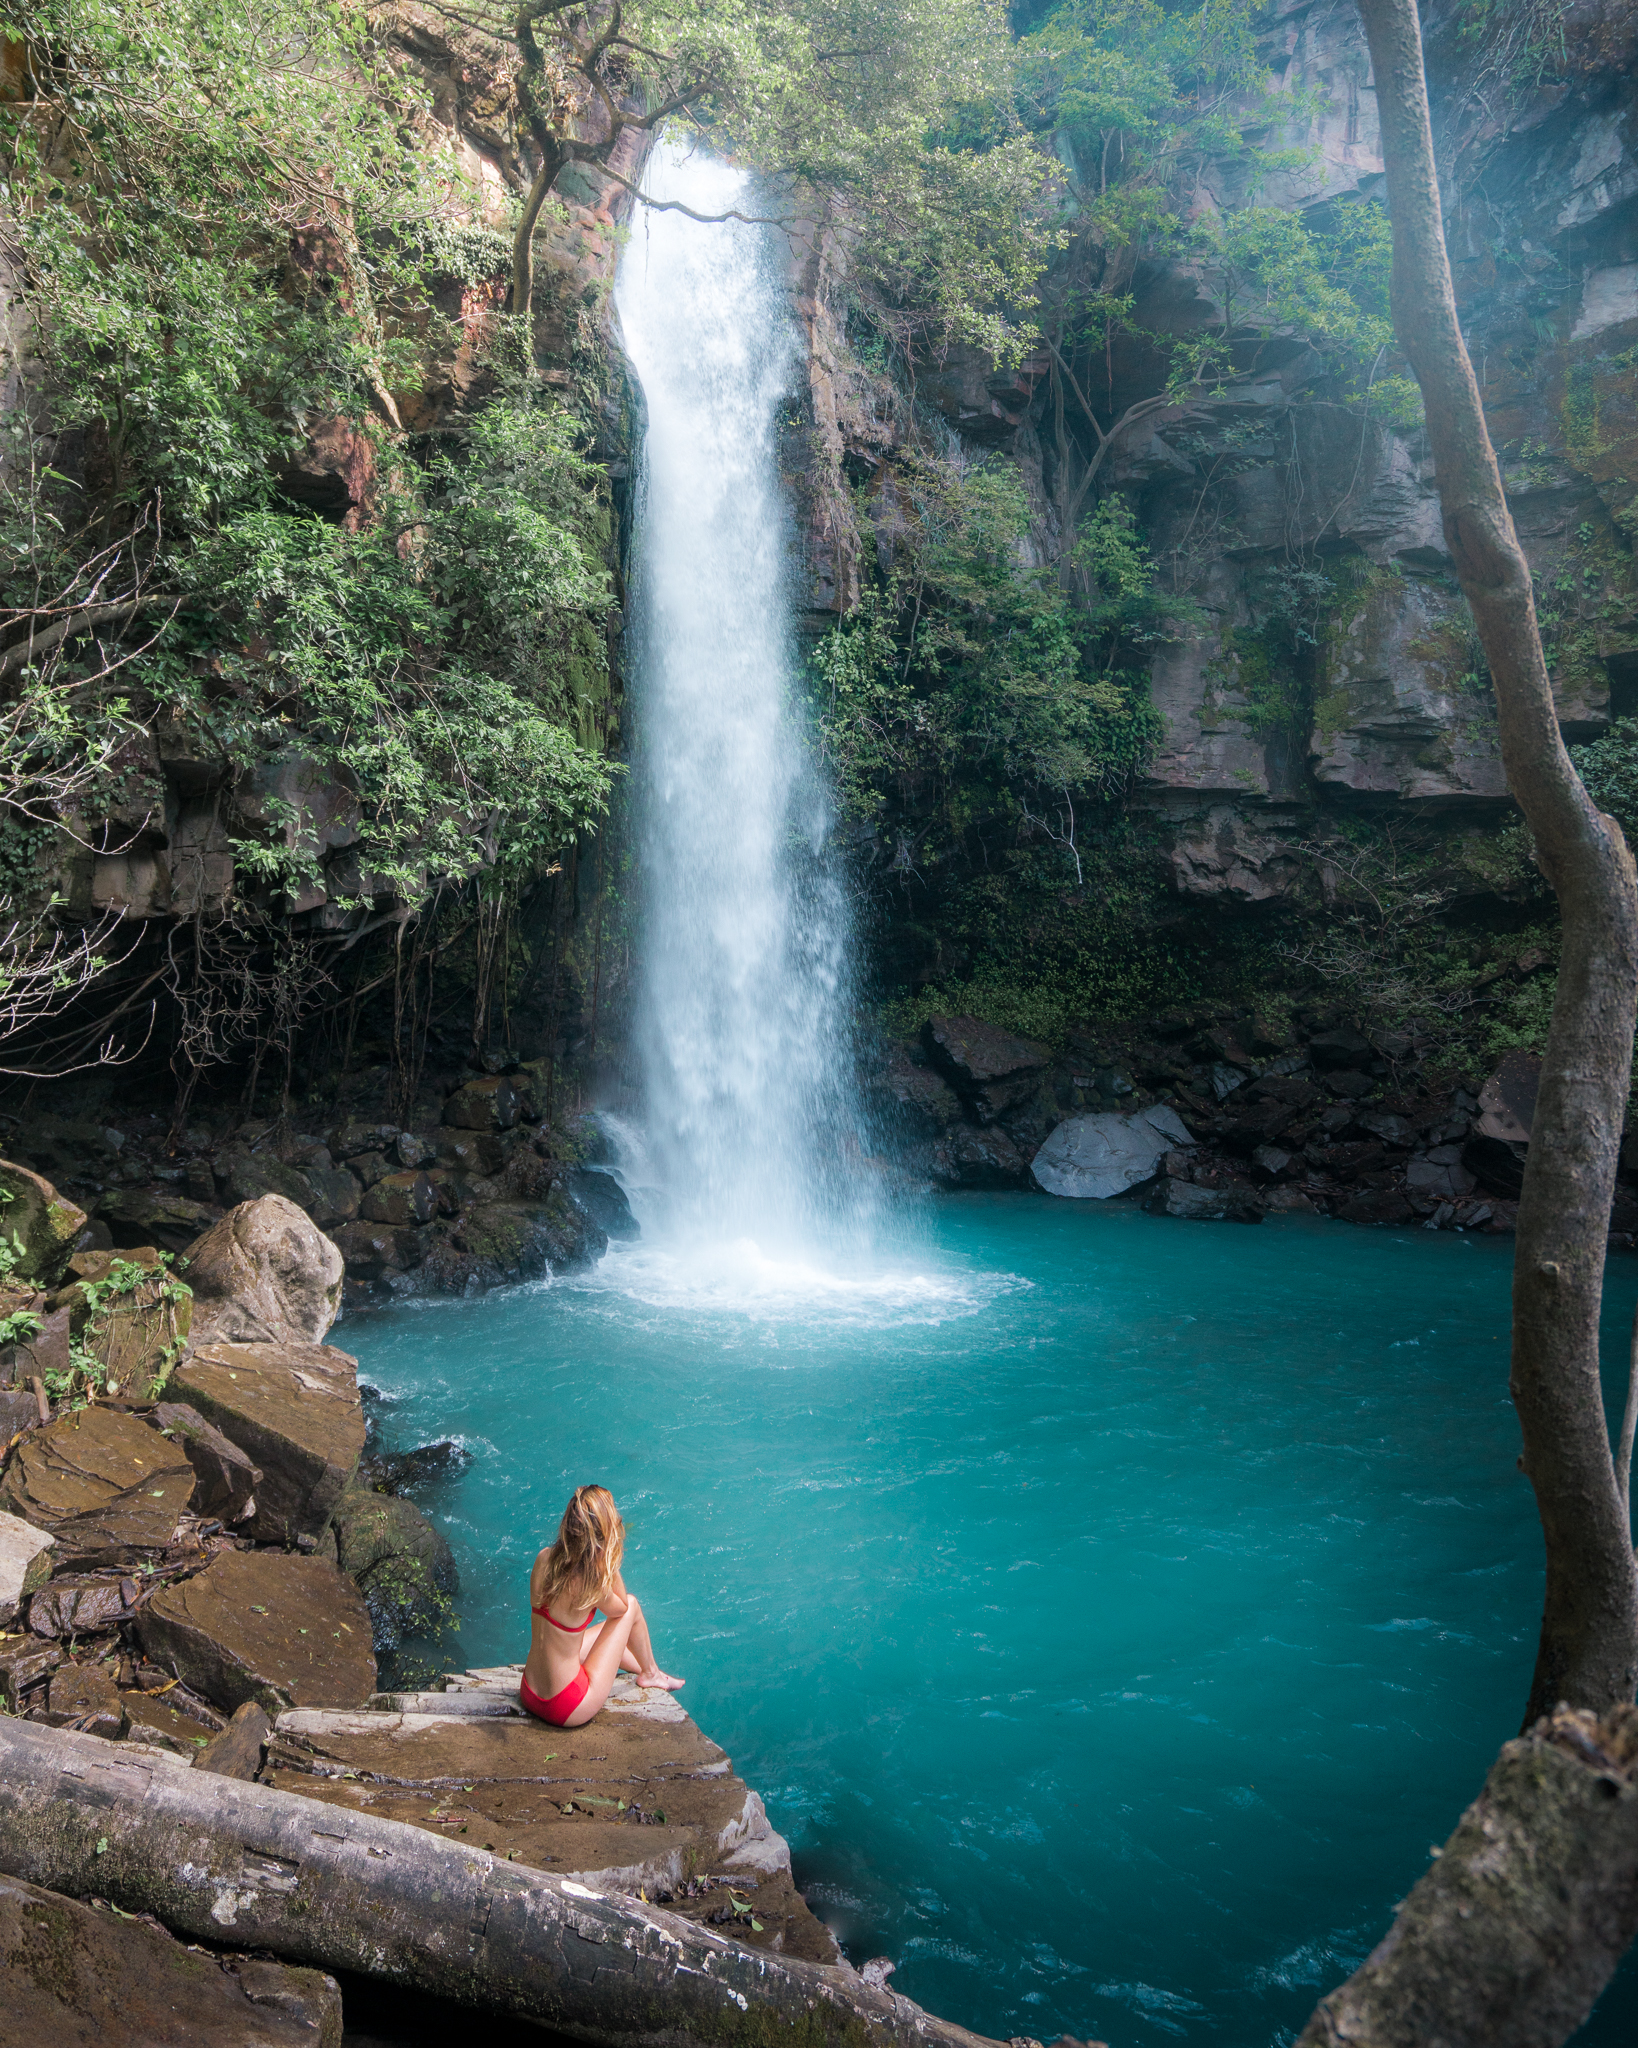 La Cangreja Waterfall in Costa Rica.